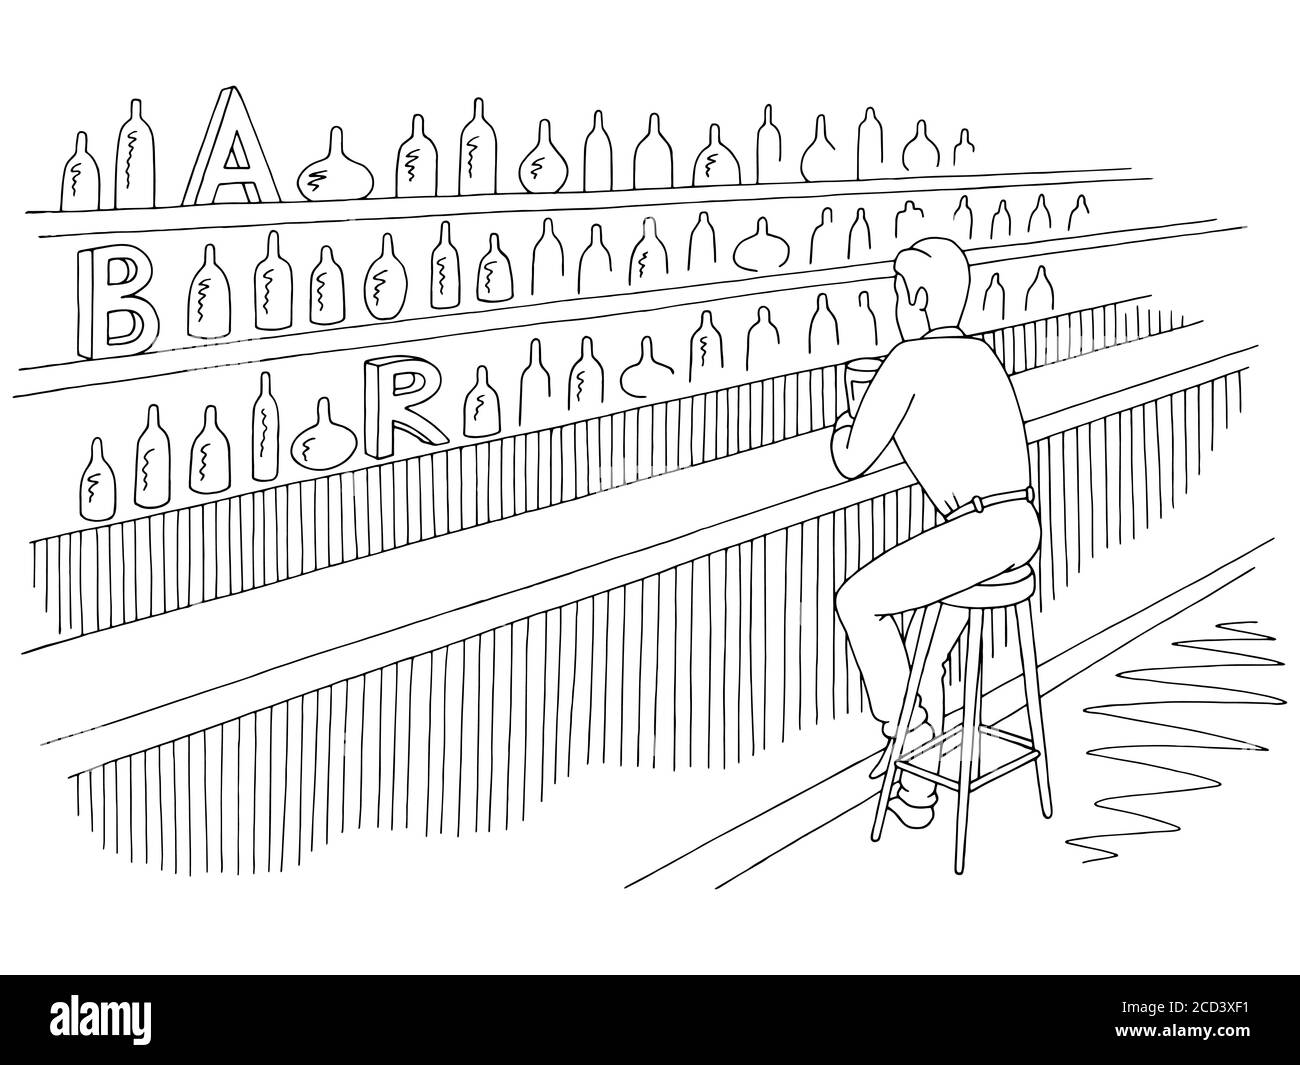 Mann sitzt in einer Bar und Bier trinken Grafik schwarz Vektor der weißen Skizzendarstellung Stock Vektor